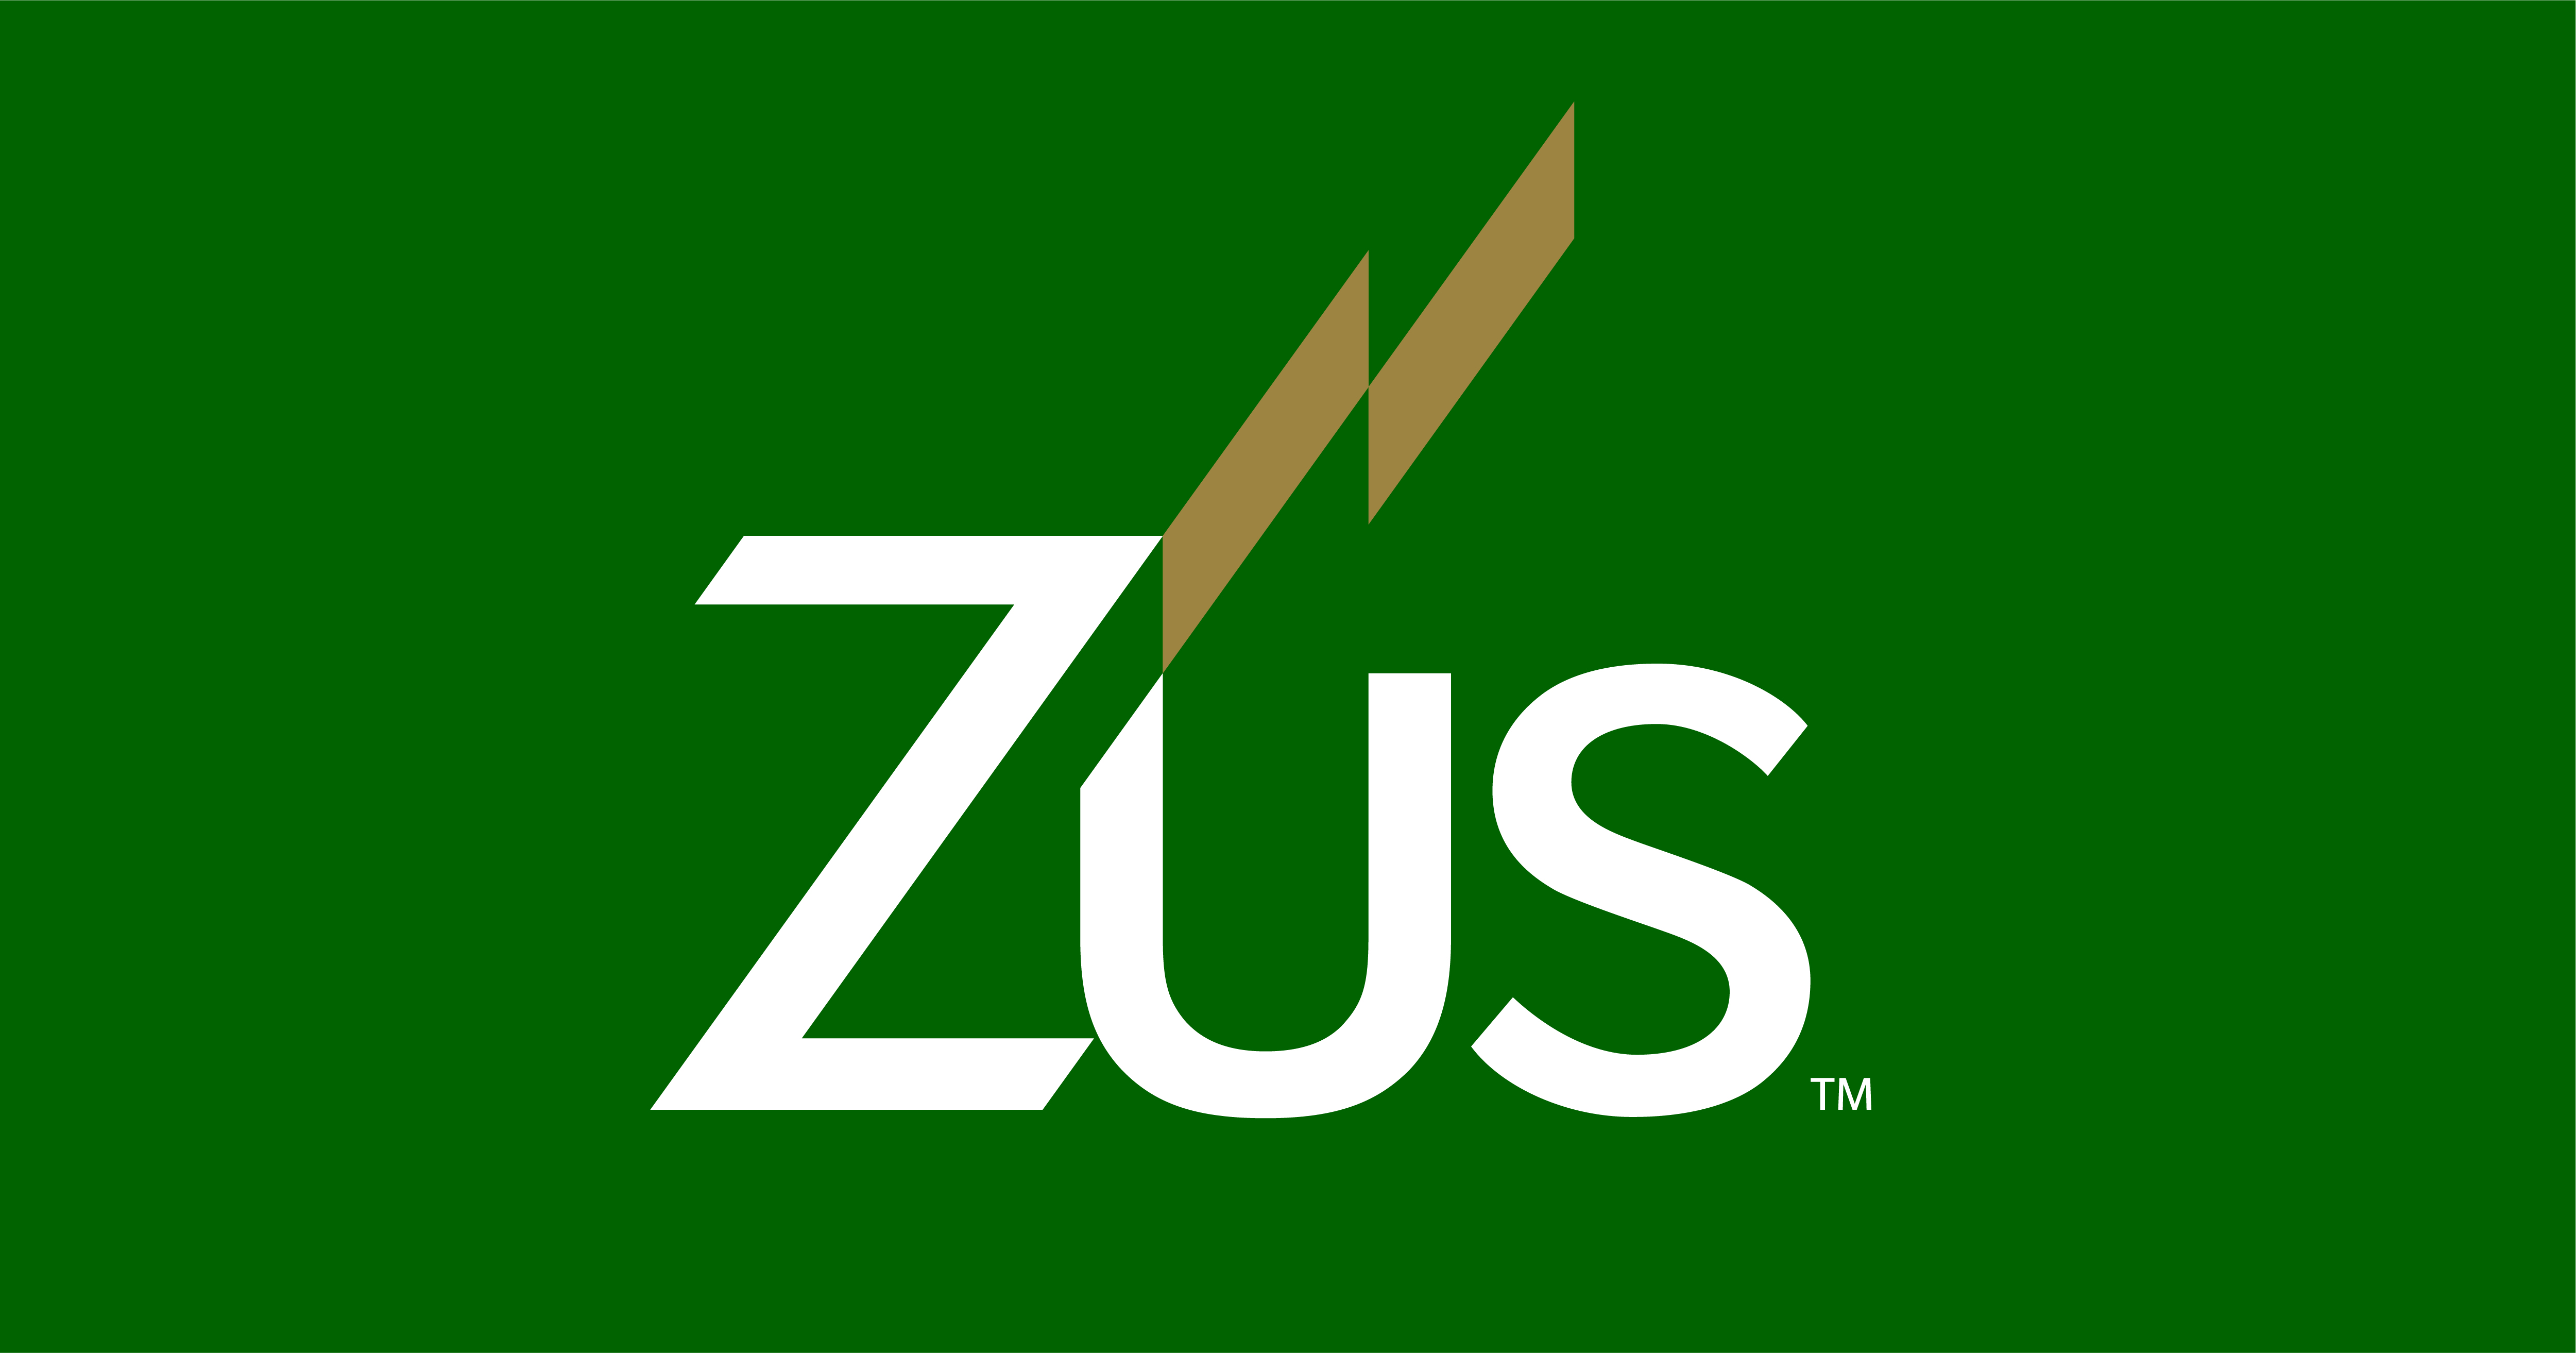 Design jobs at Zus Health